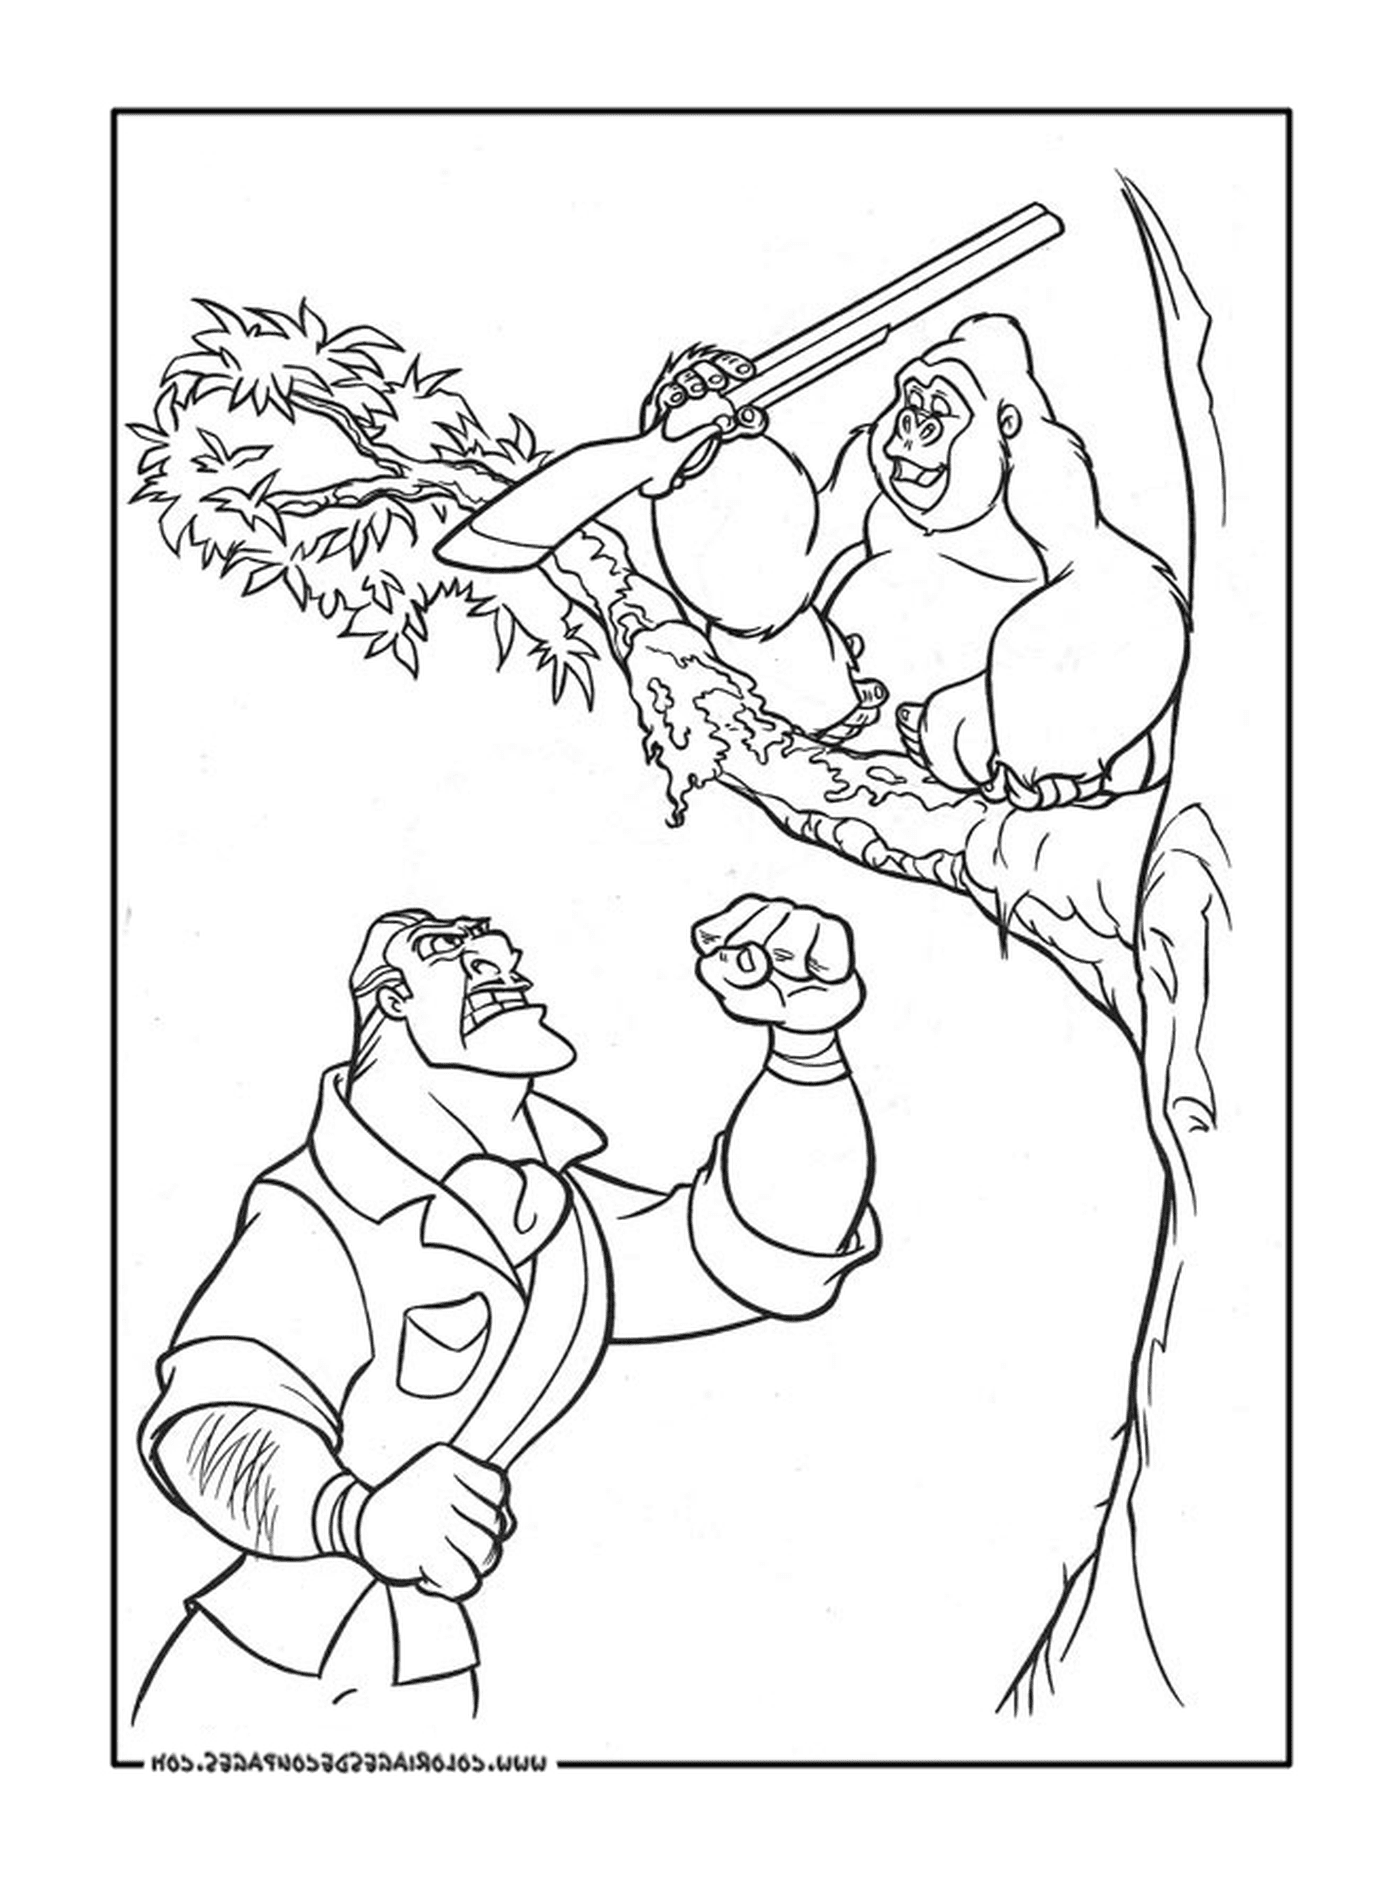  Homem e gorila em uma árvore 